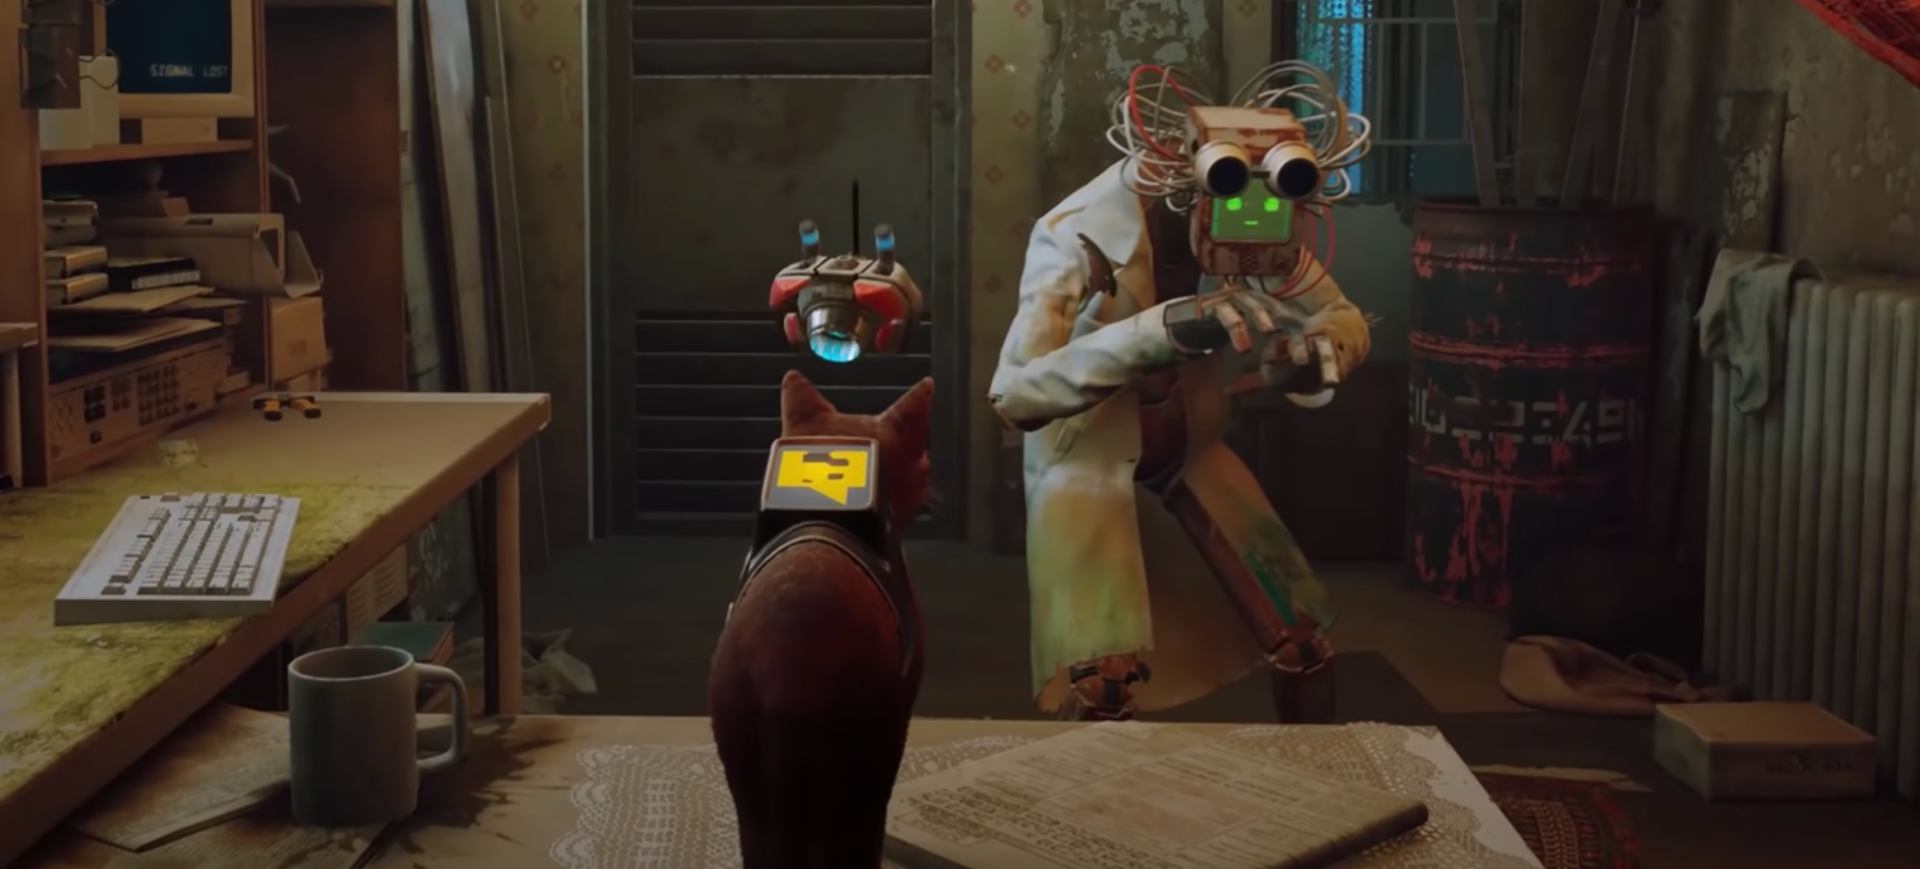 Imagem mostra uma cena do jogo indie Stray, que tem um gato como protagonista: na cena aparece o gato em cima de uma mesa, esperando um cientista consertar algo